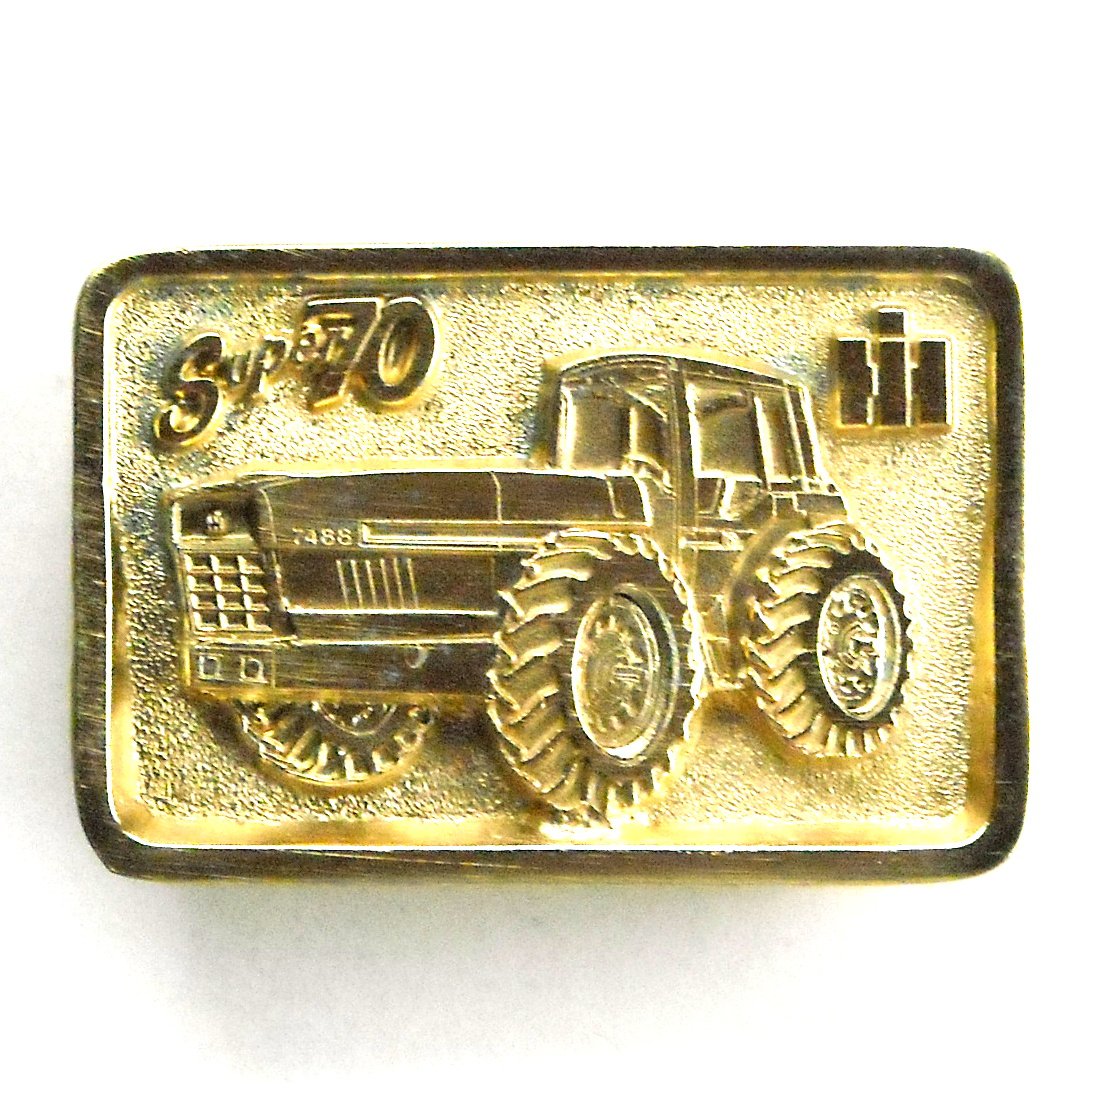 International Harvester Super 70 Kansas City Edition Gold Color Belt Buckle